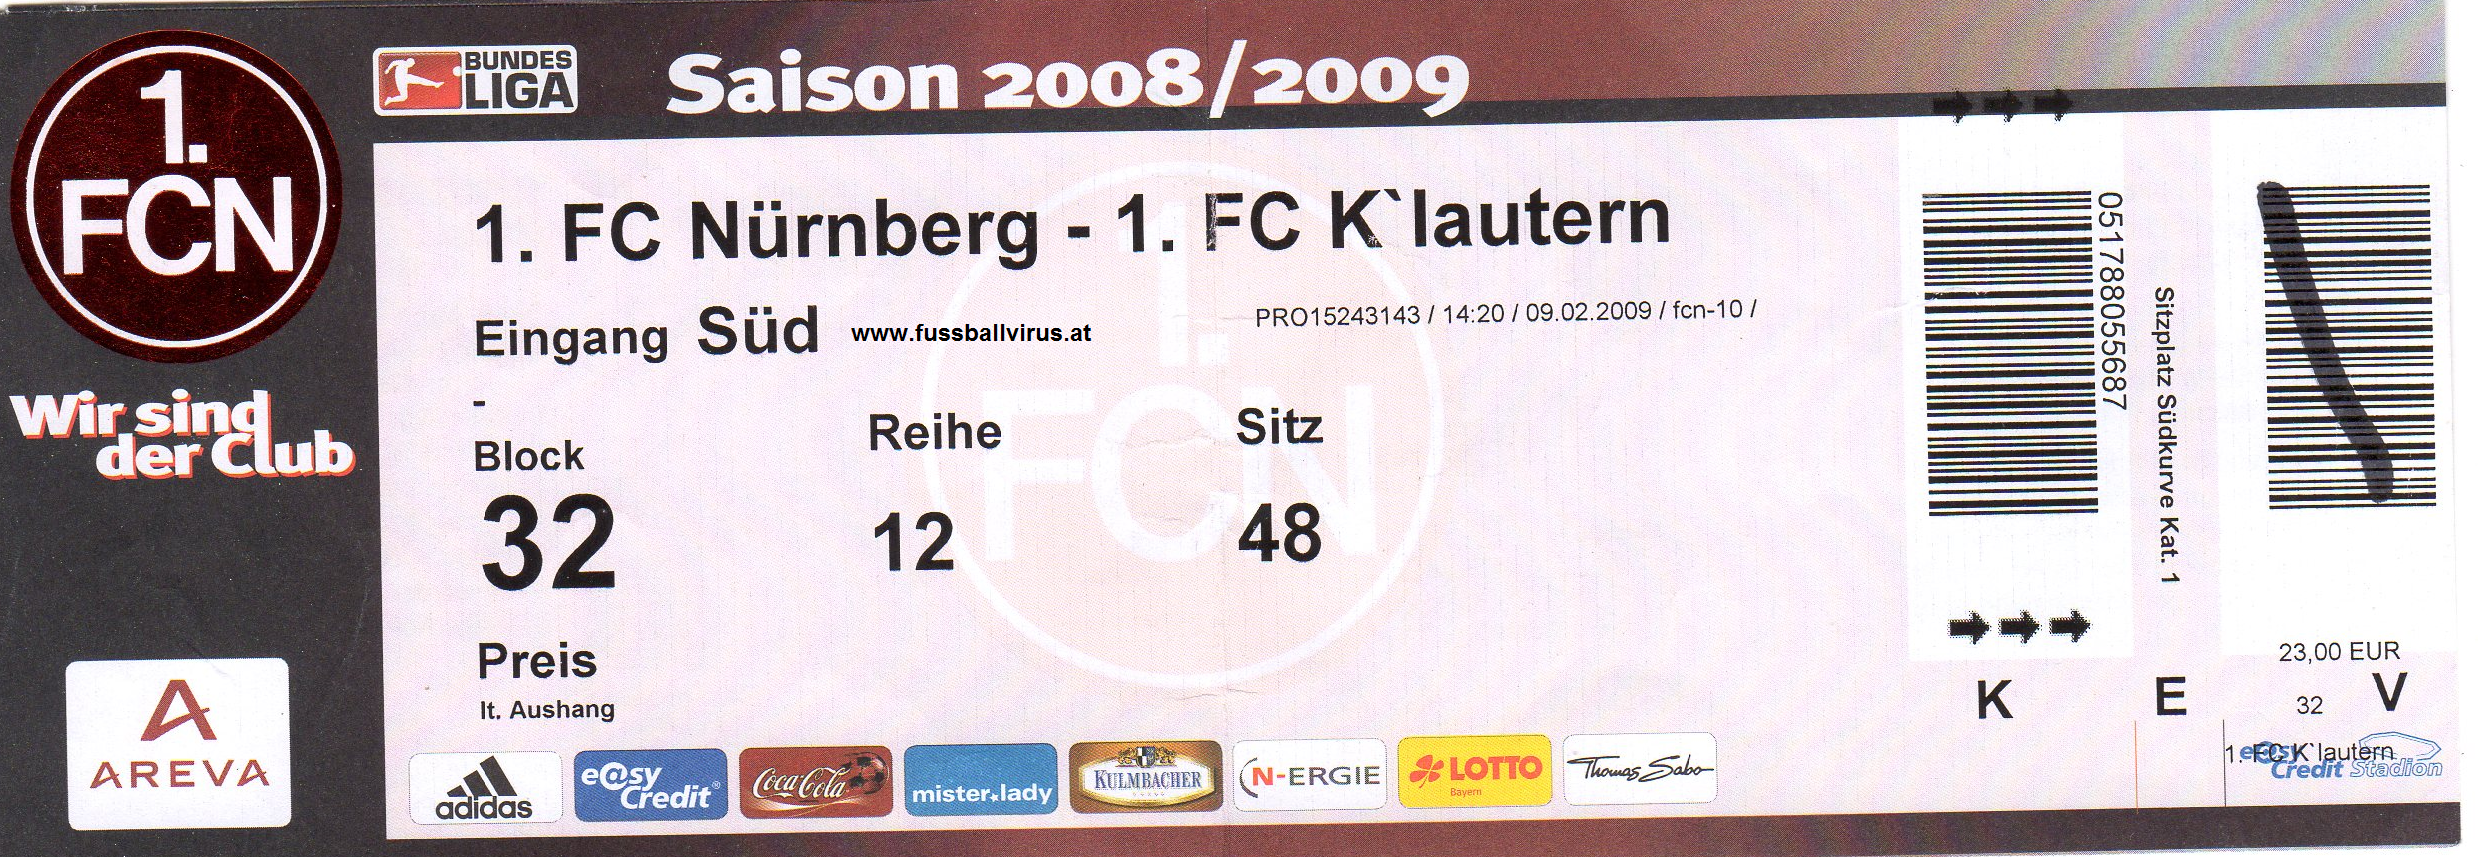 9.2. Nürnberg - Kaiserslautern